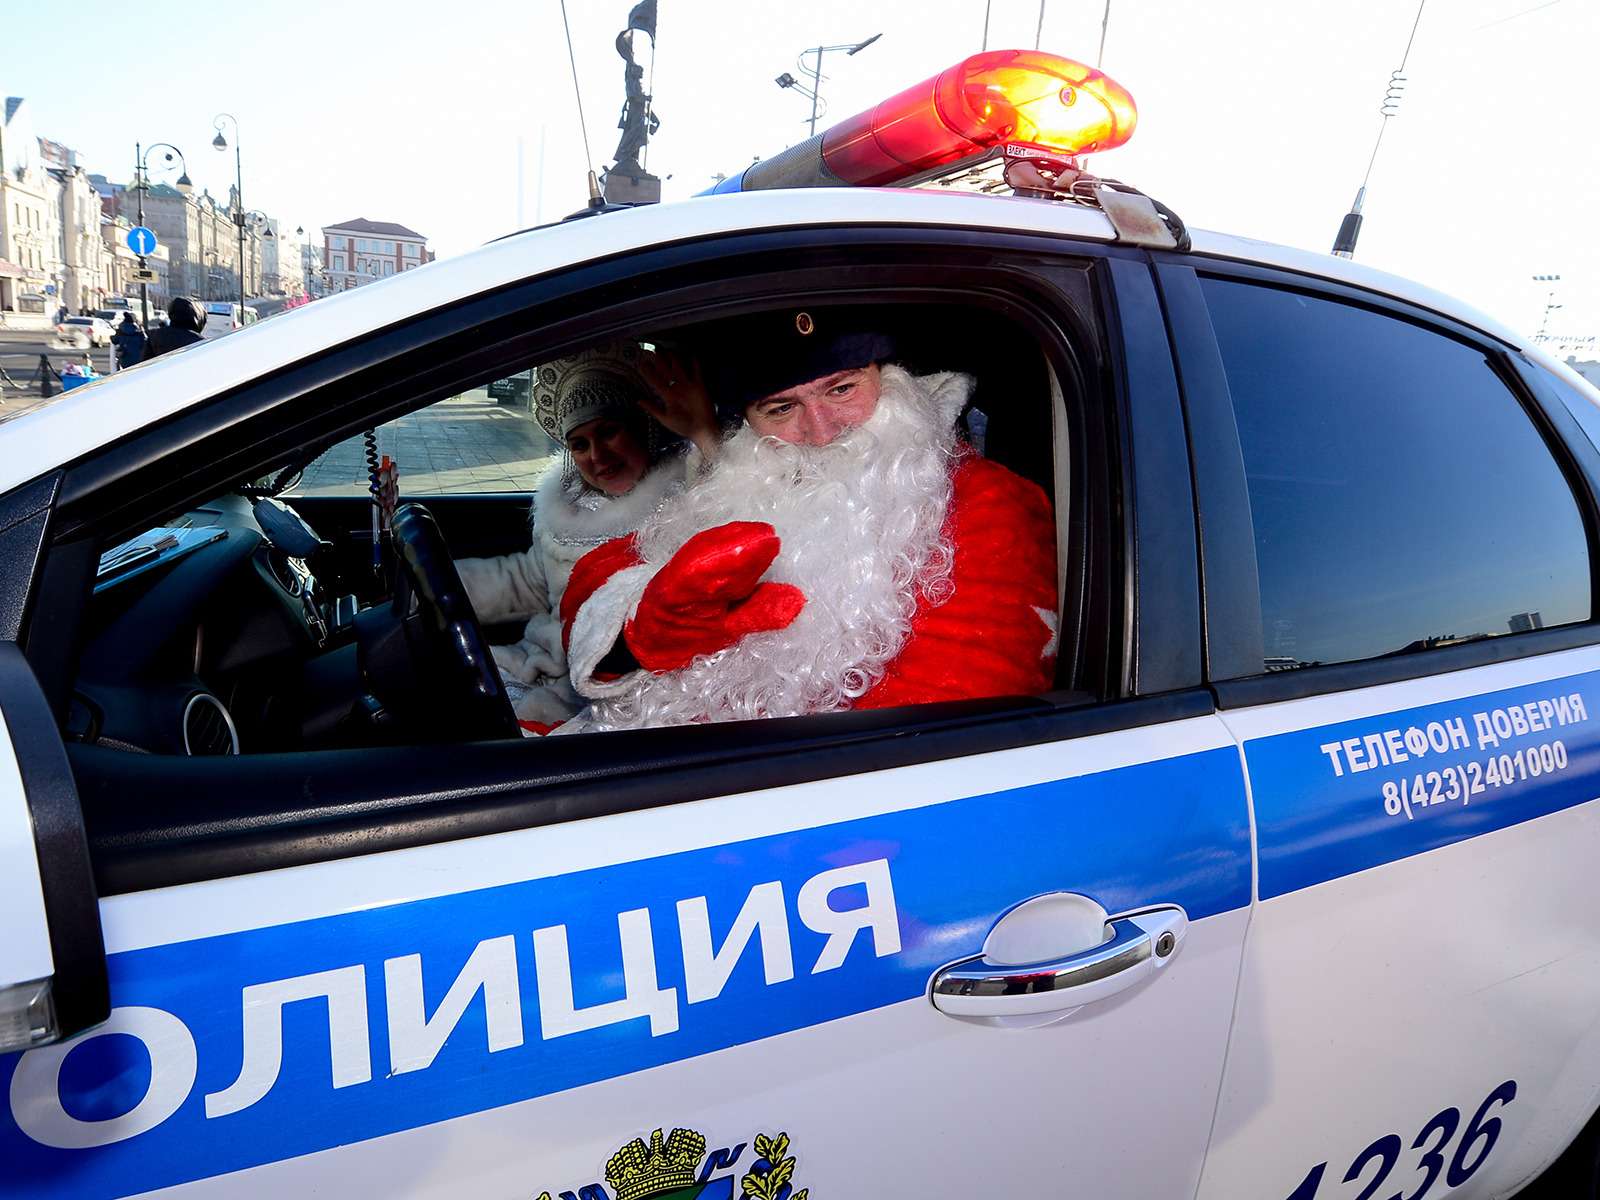 Кадр не обязательно постановочный. Иногда сотрудники ГИБДД действительно выдают Деду Морозу свой транспорт – в частности, так случалось в Павловском Посаде.